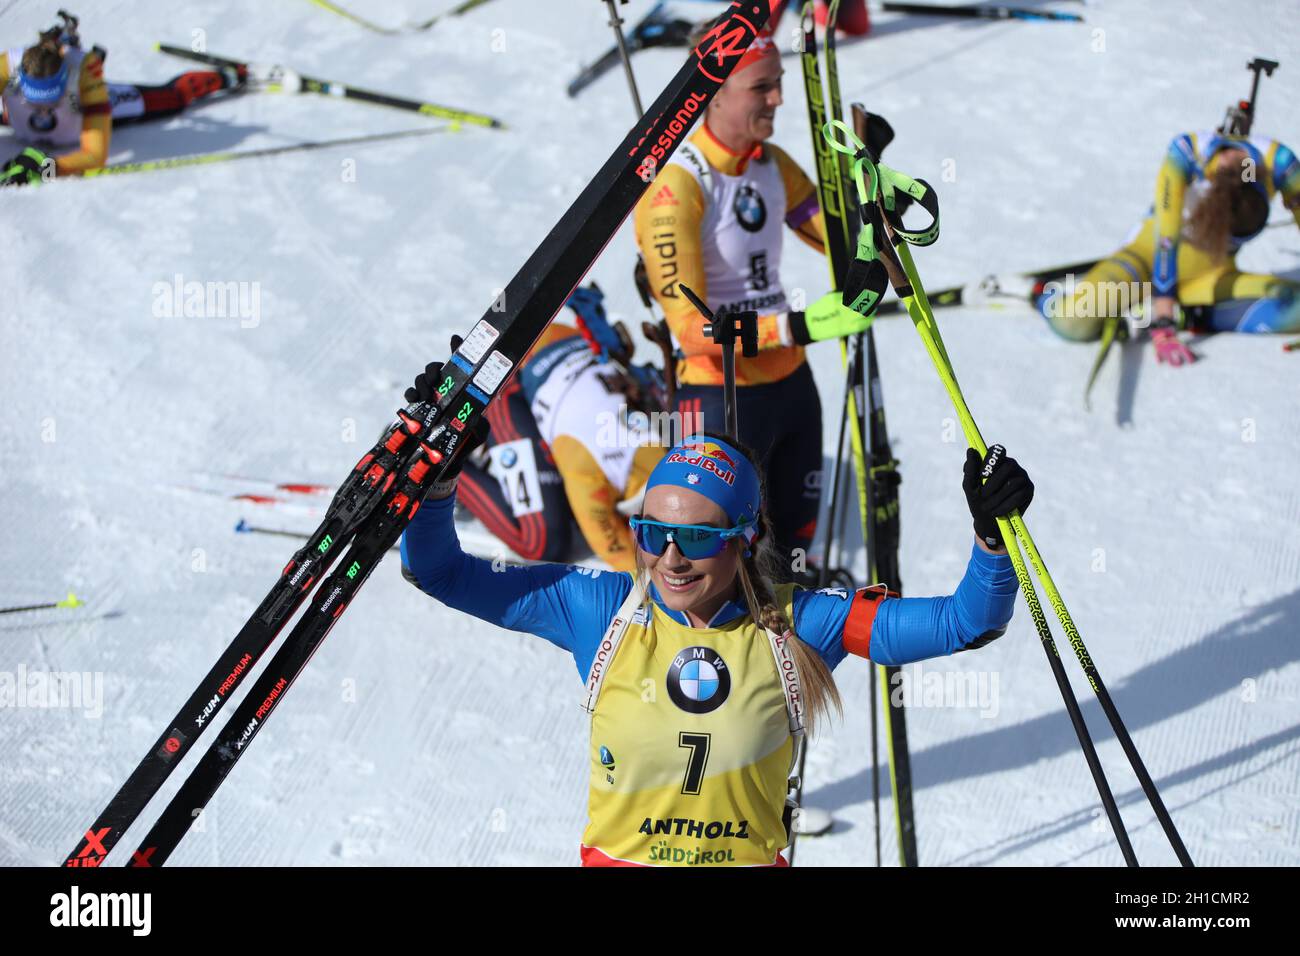 Dorothea Wierer (Italien) strahlt nach den WM-Titel mit der Sonne um die Wette bei der IBU Biathlon-Weltmeisterschaft Antholz 2020 Stock Photo